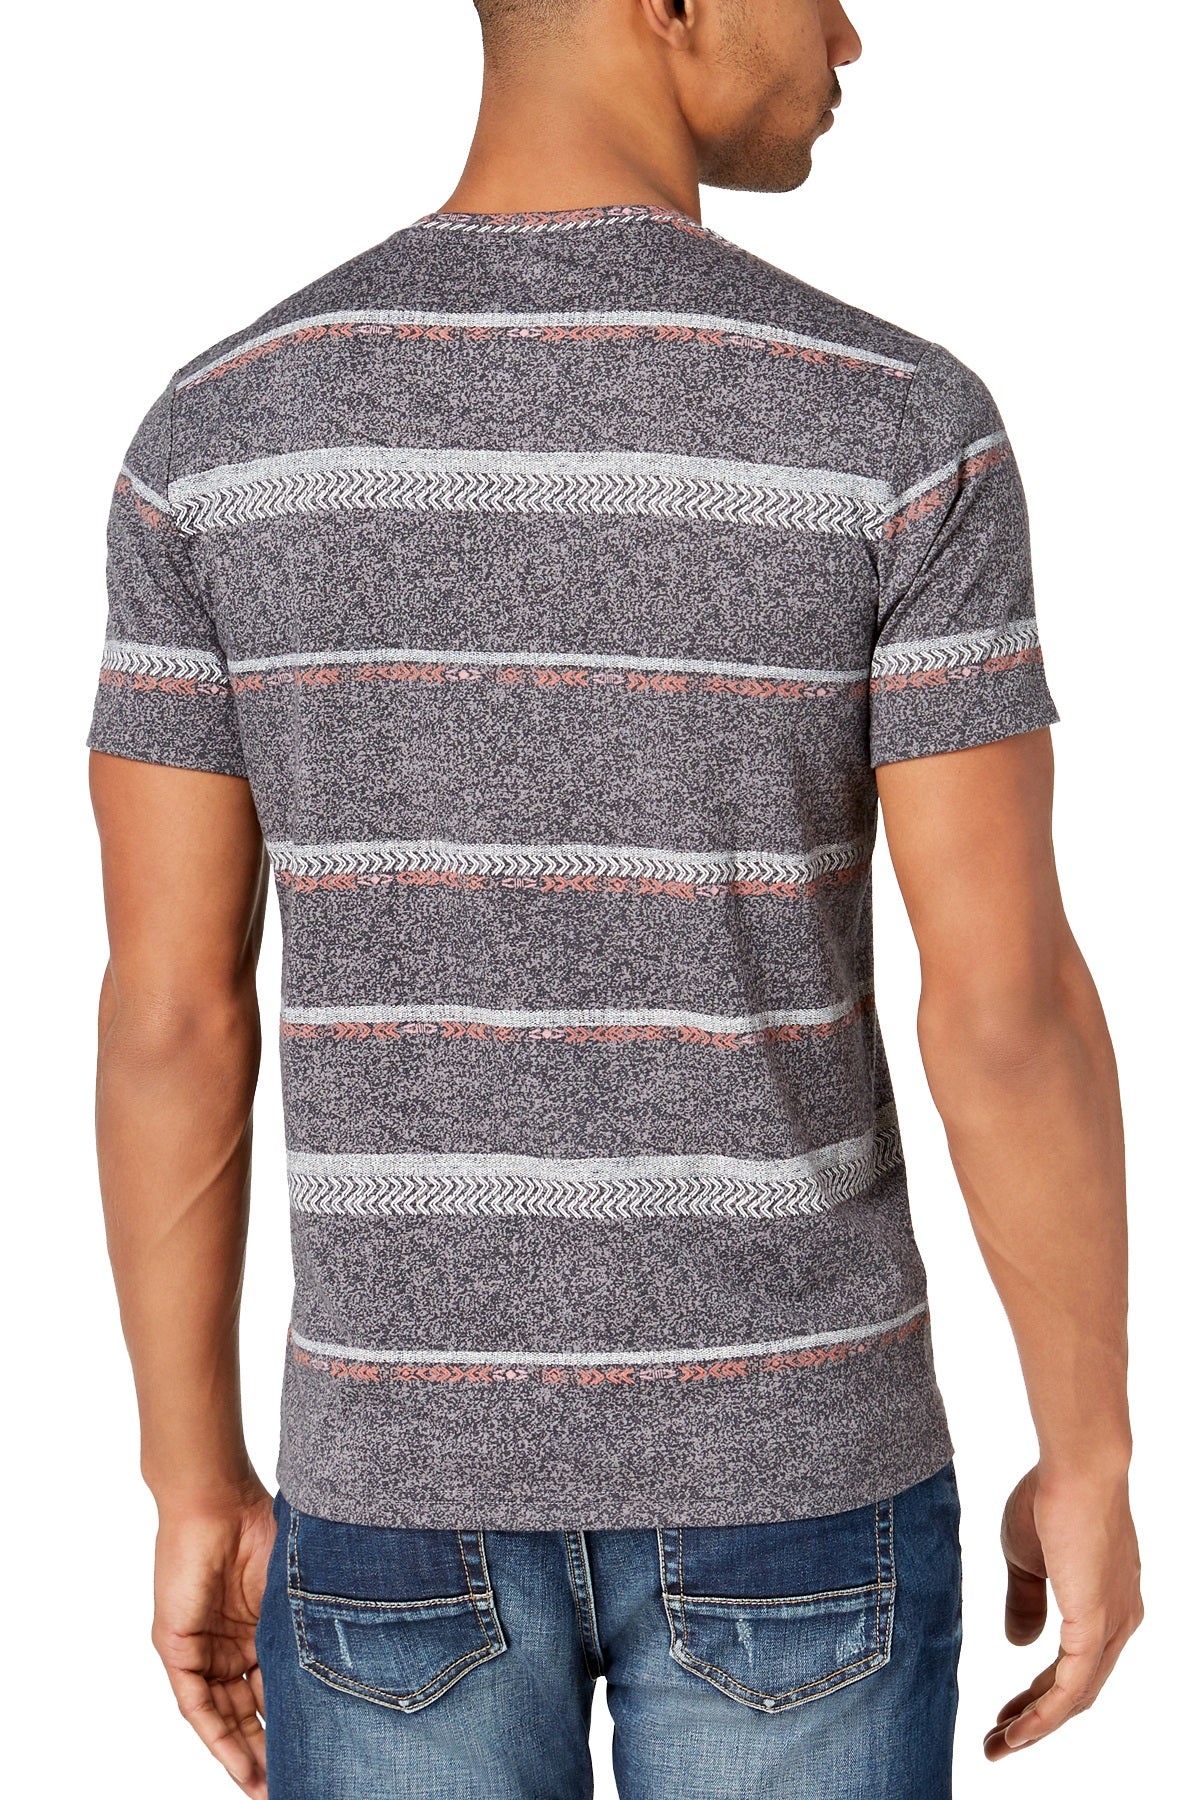 American Rag Grey-Skies Geo-Stripe Print T-Shirt